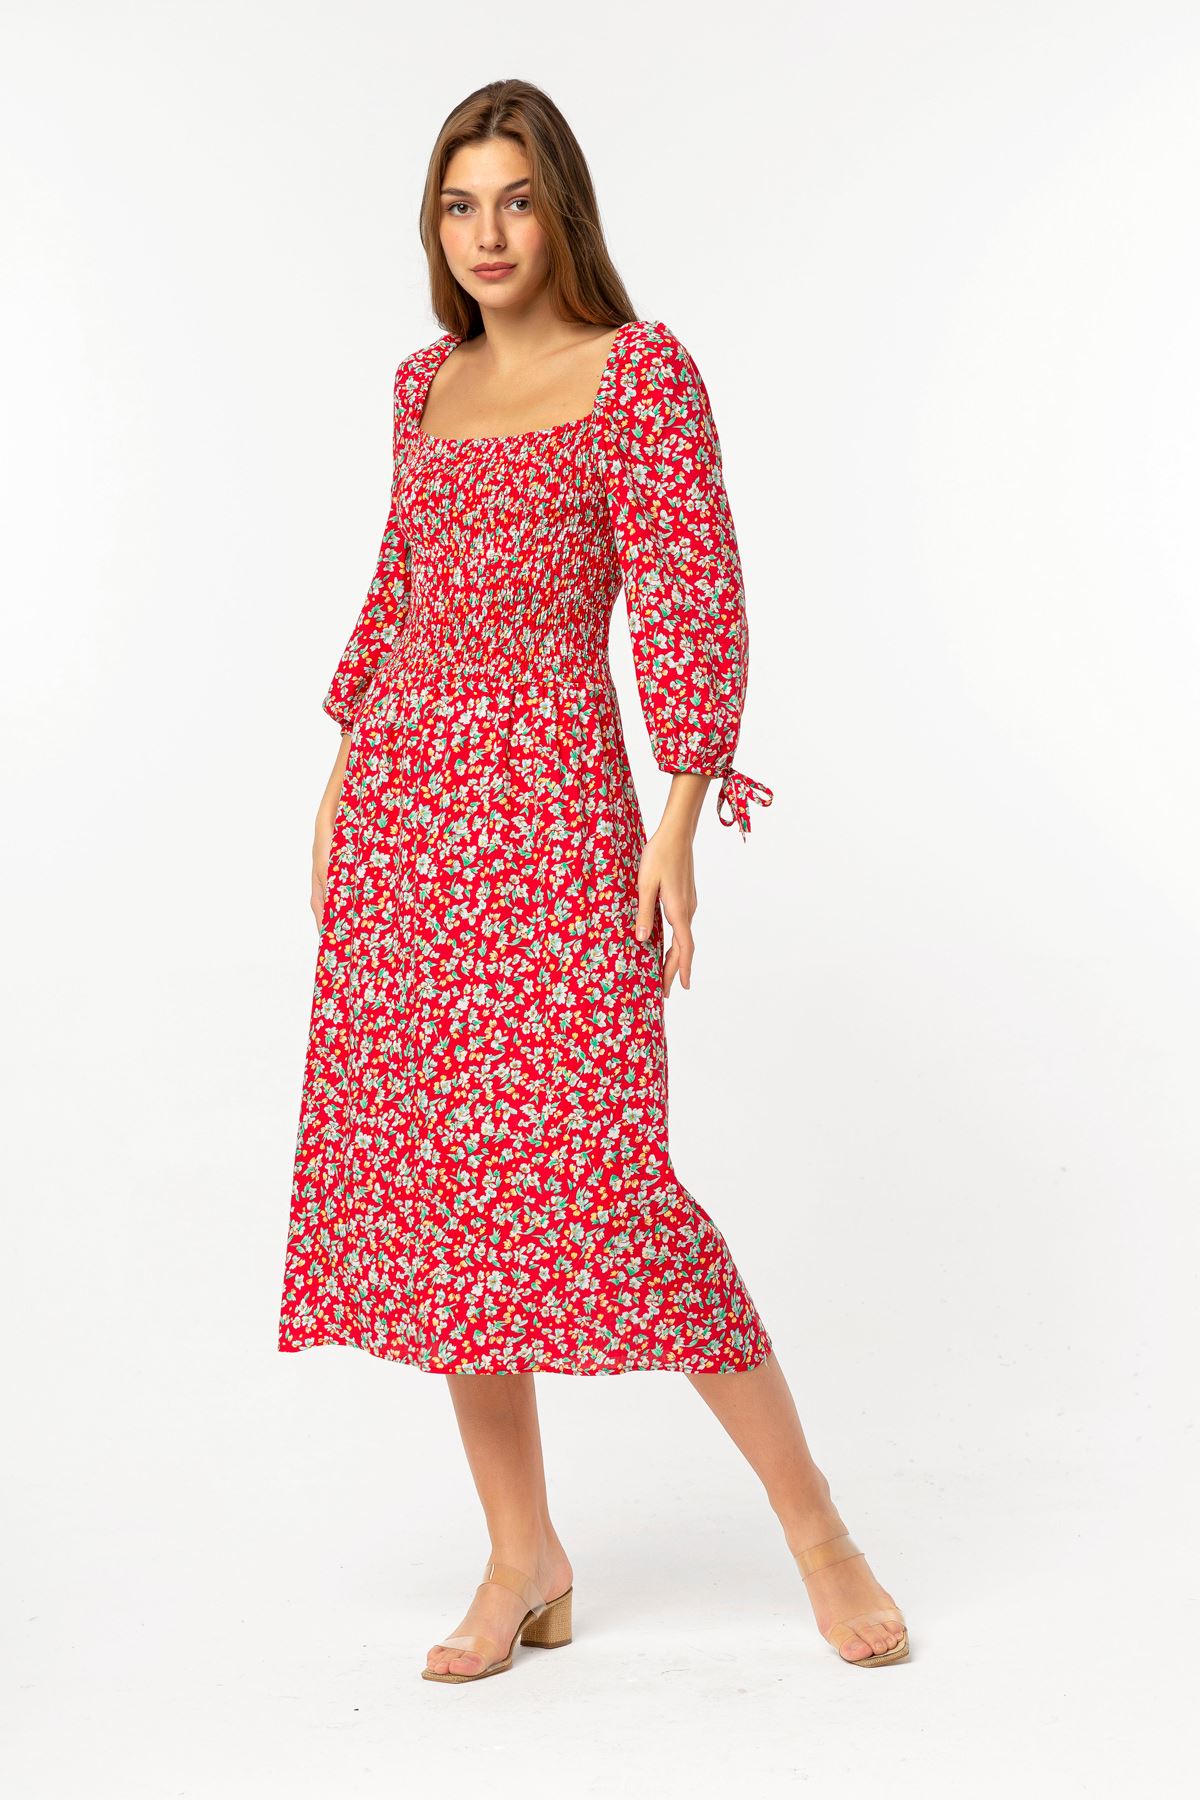 فستان نسائي قماش استيعاب نصف ذراع طوق مربع تحت الركبتين مستقيم - أحمر